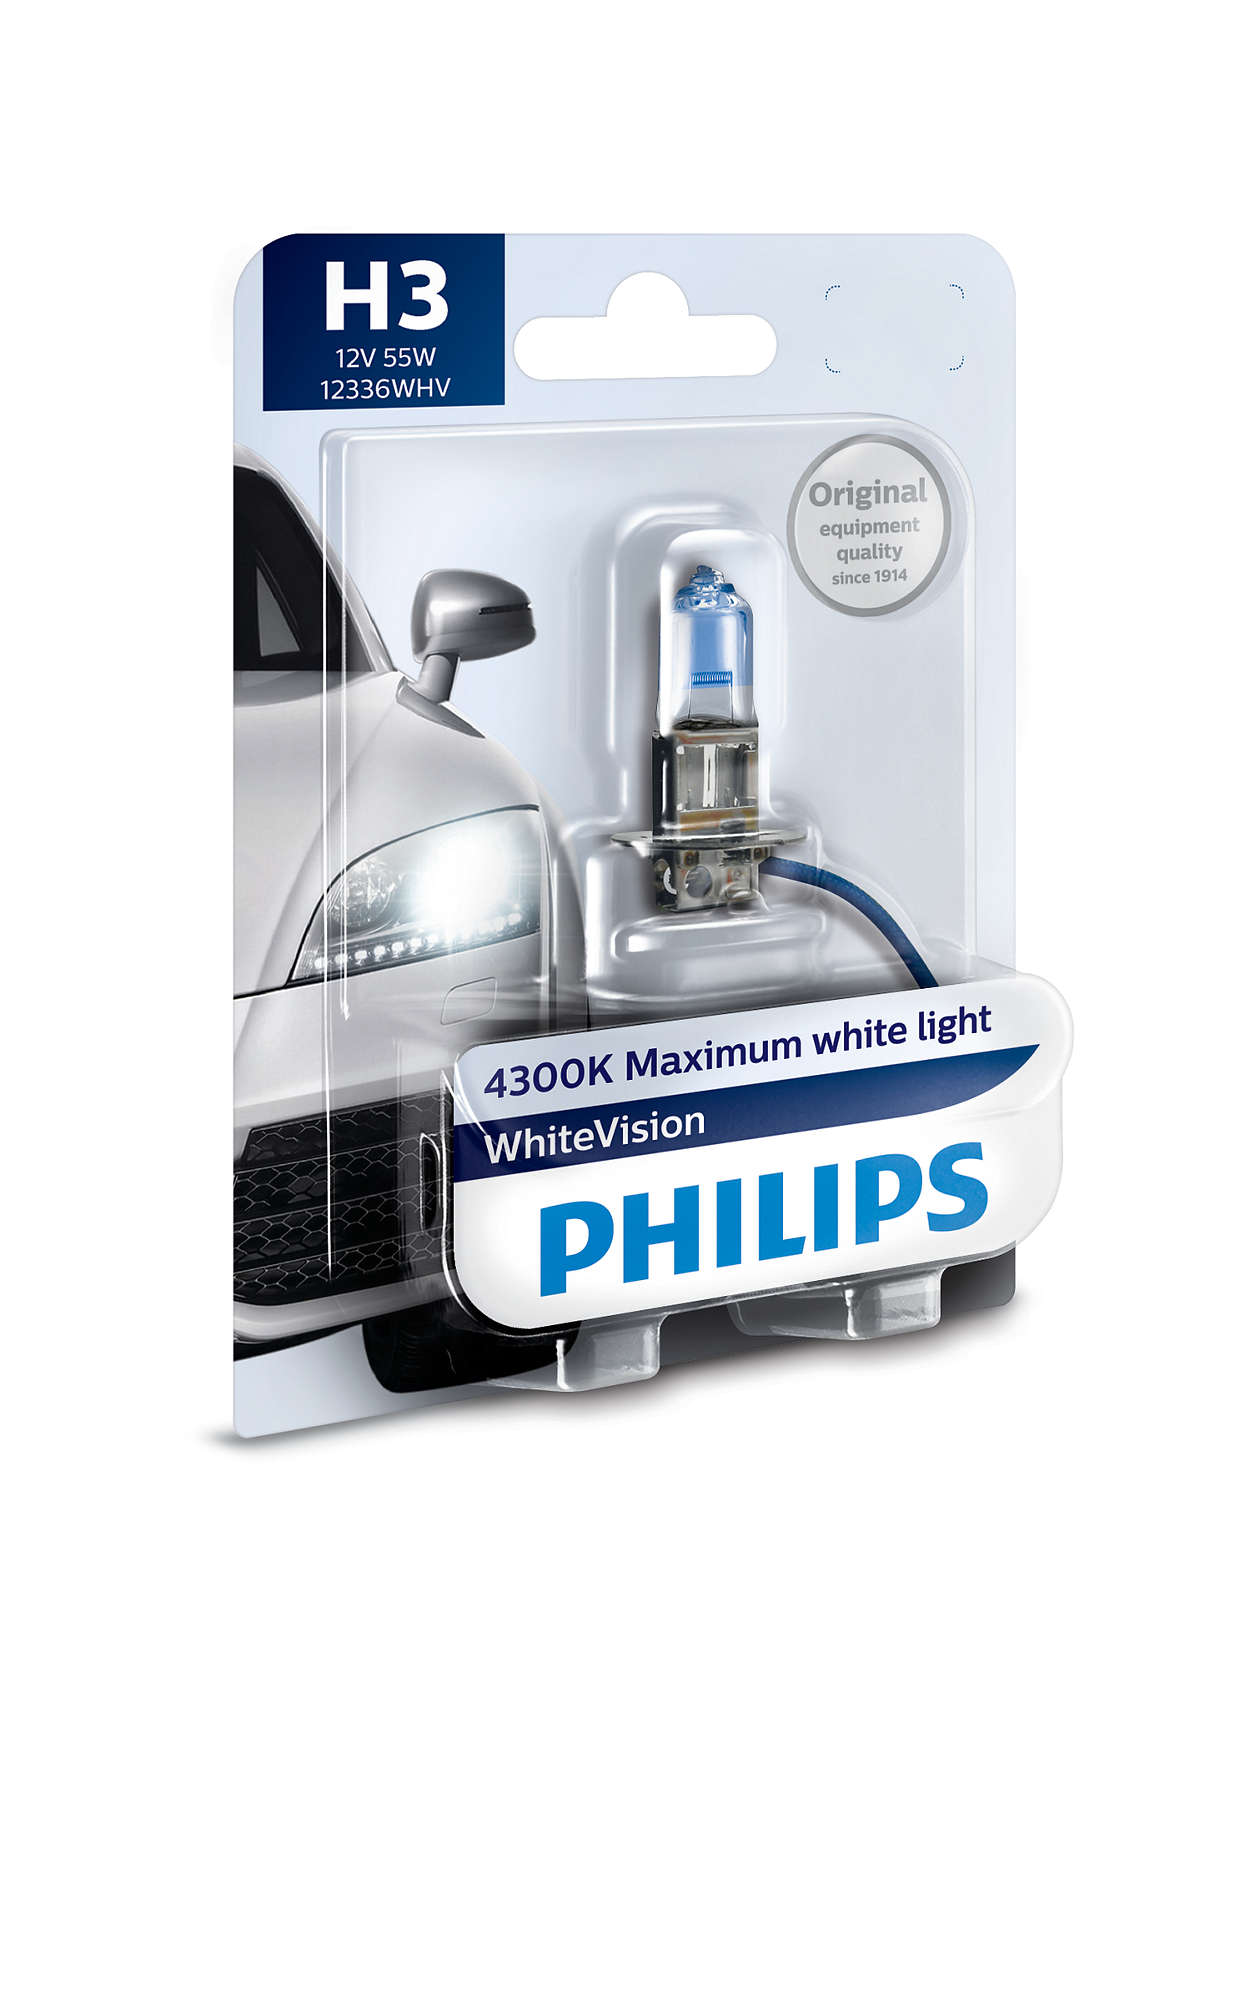 Λάμπες Philips White Vision H3 4500K 55W Κωδικός 12336WHVB1 Τιμή : ευρώ